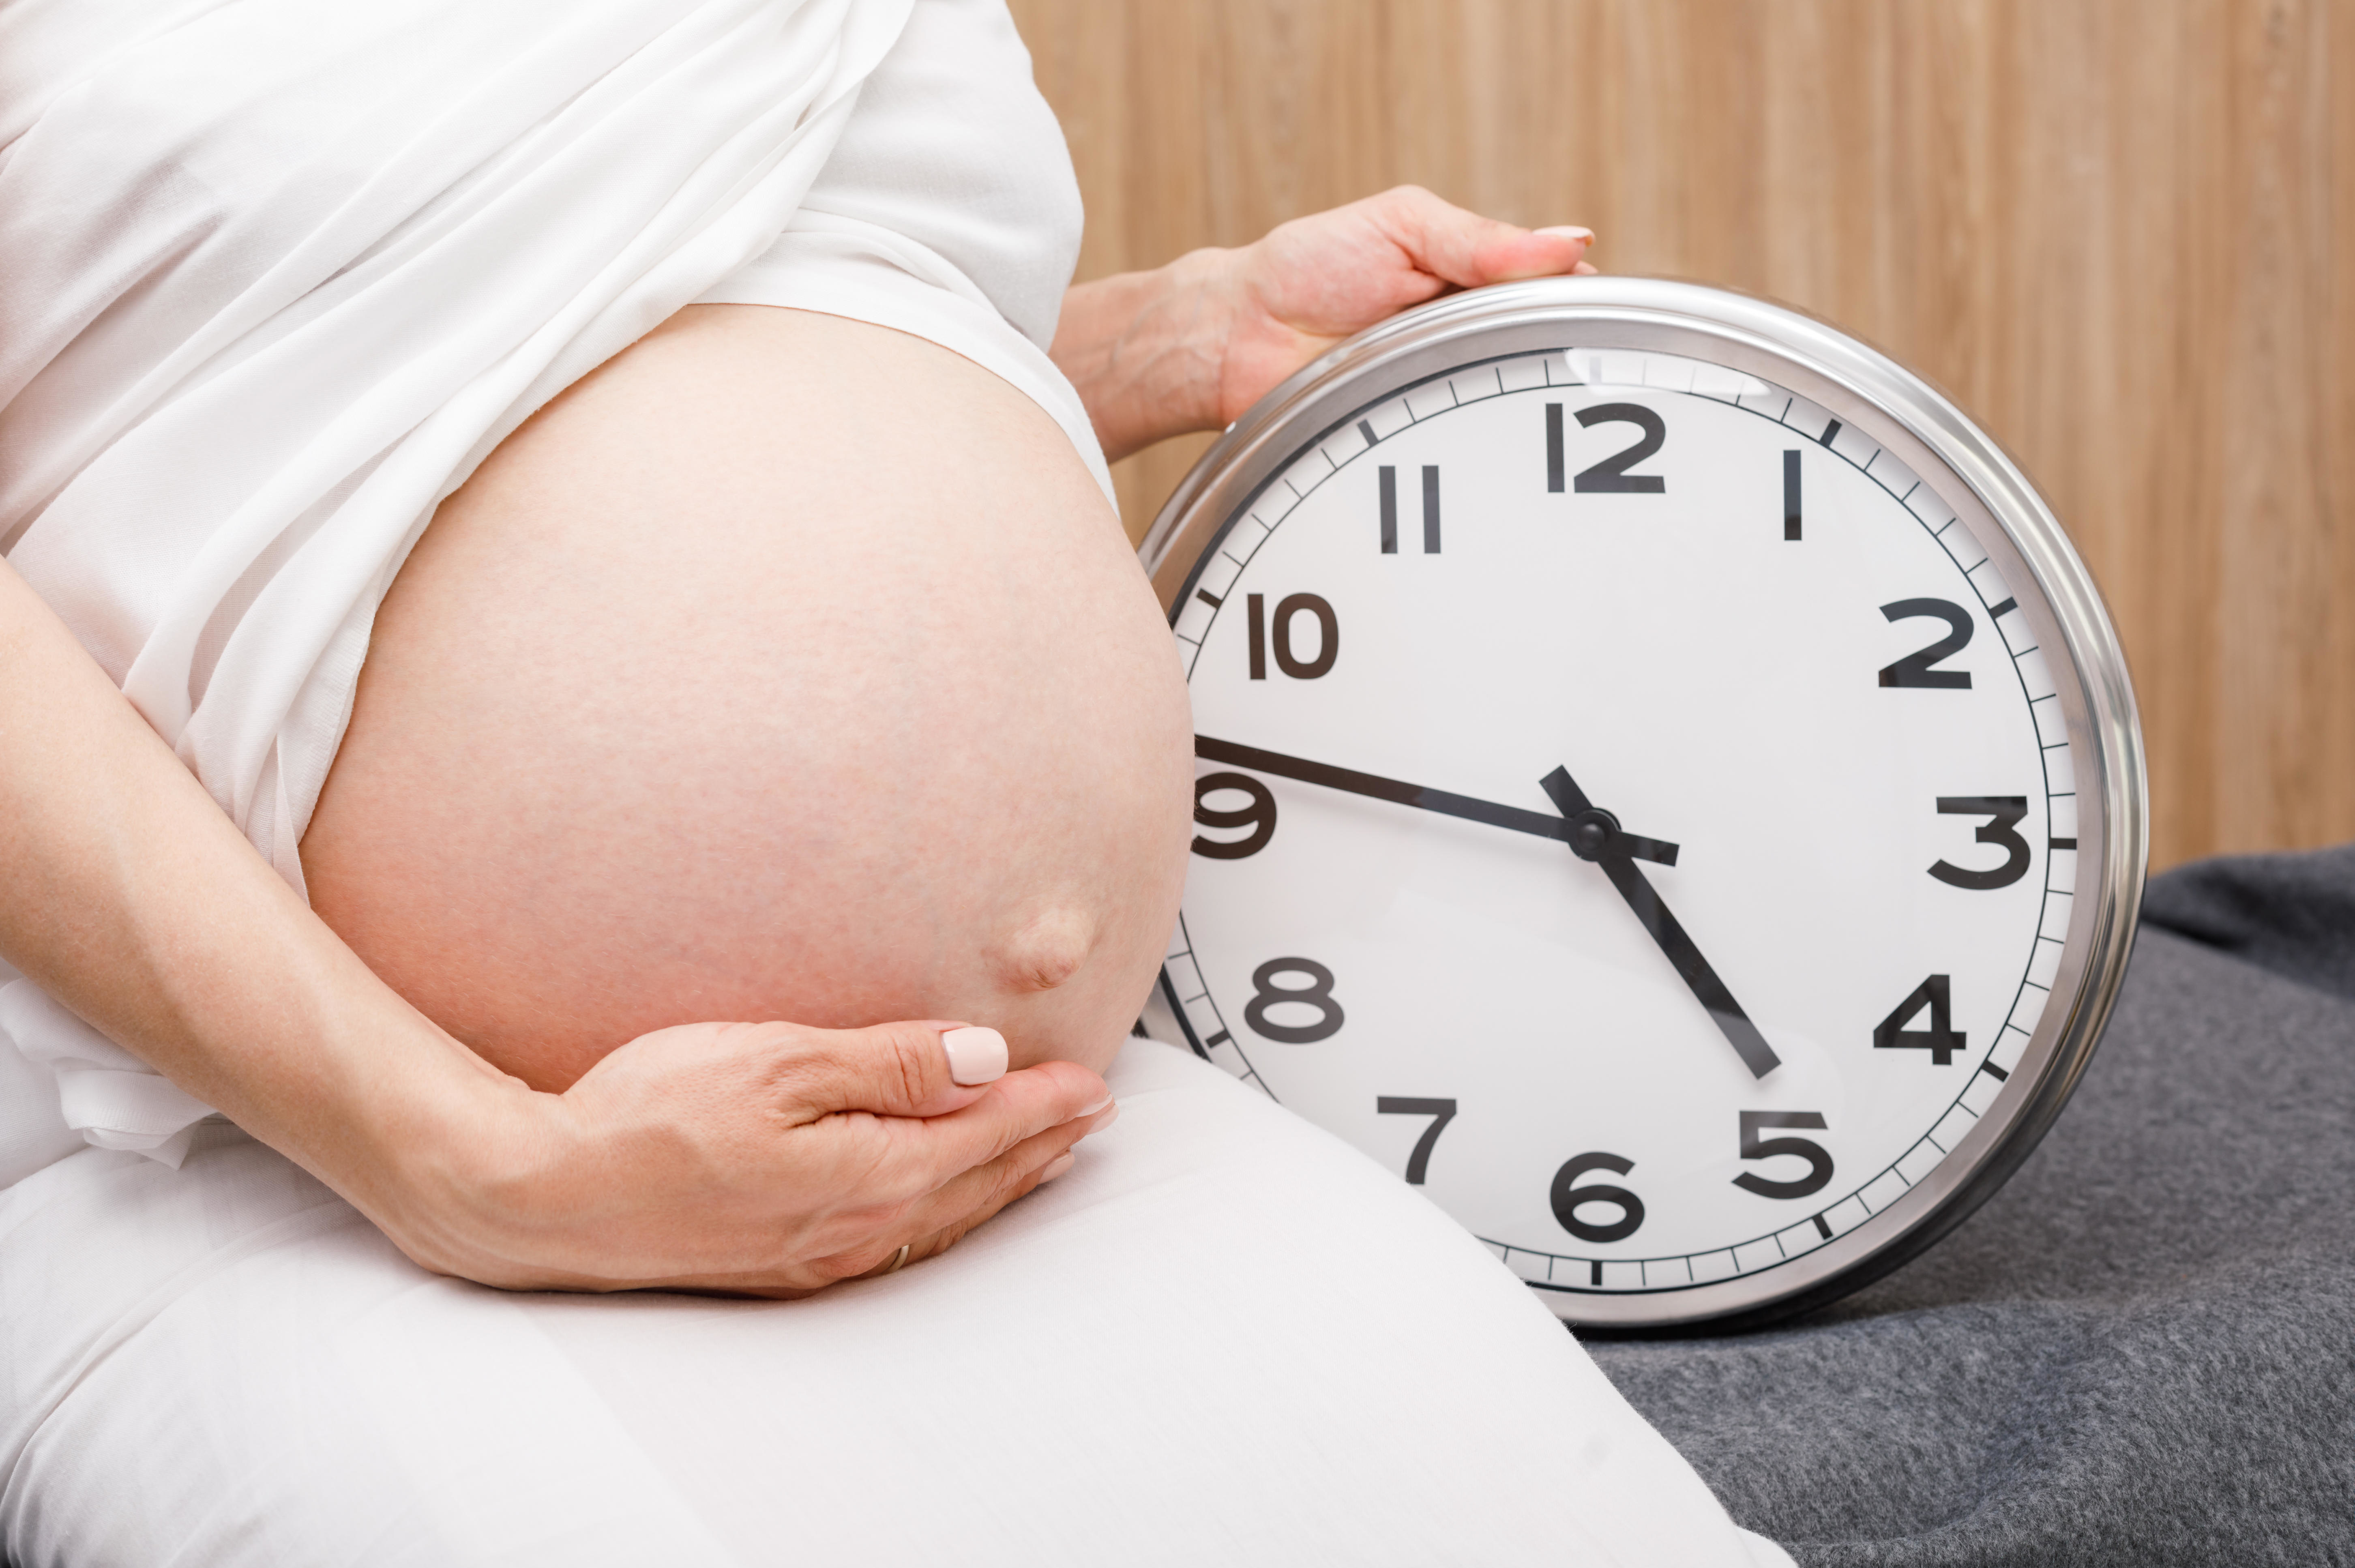 Вес во время беременности. Какая прибавка считается оптимальной?